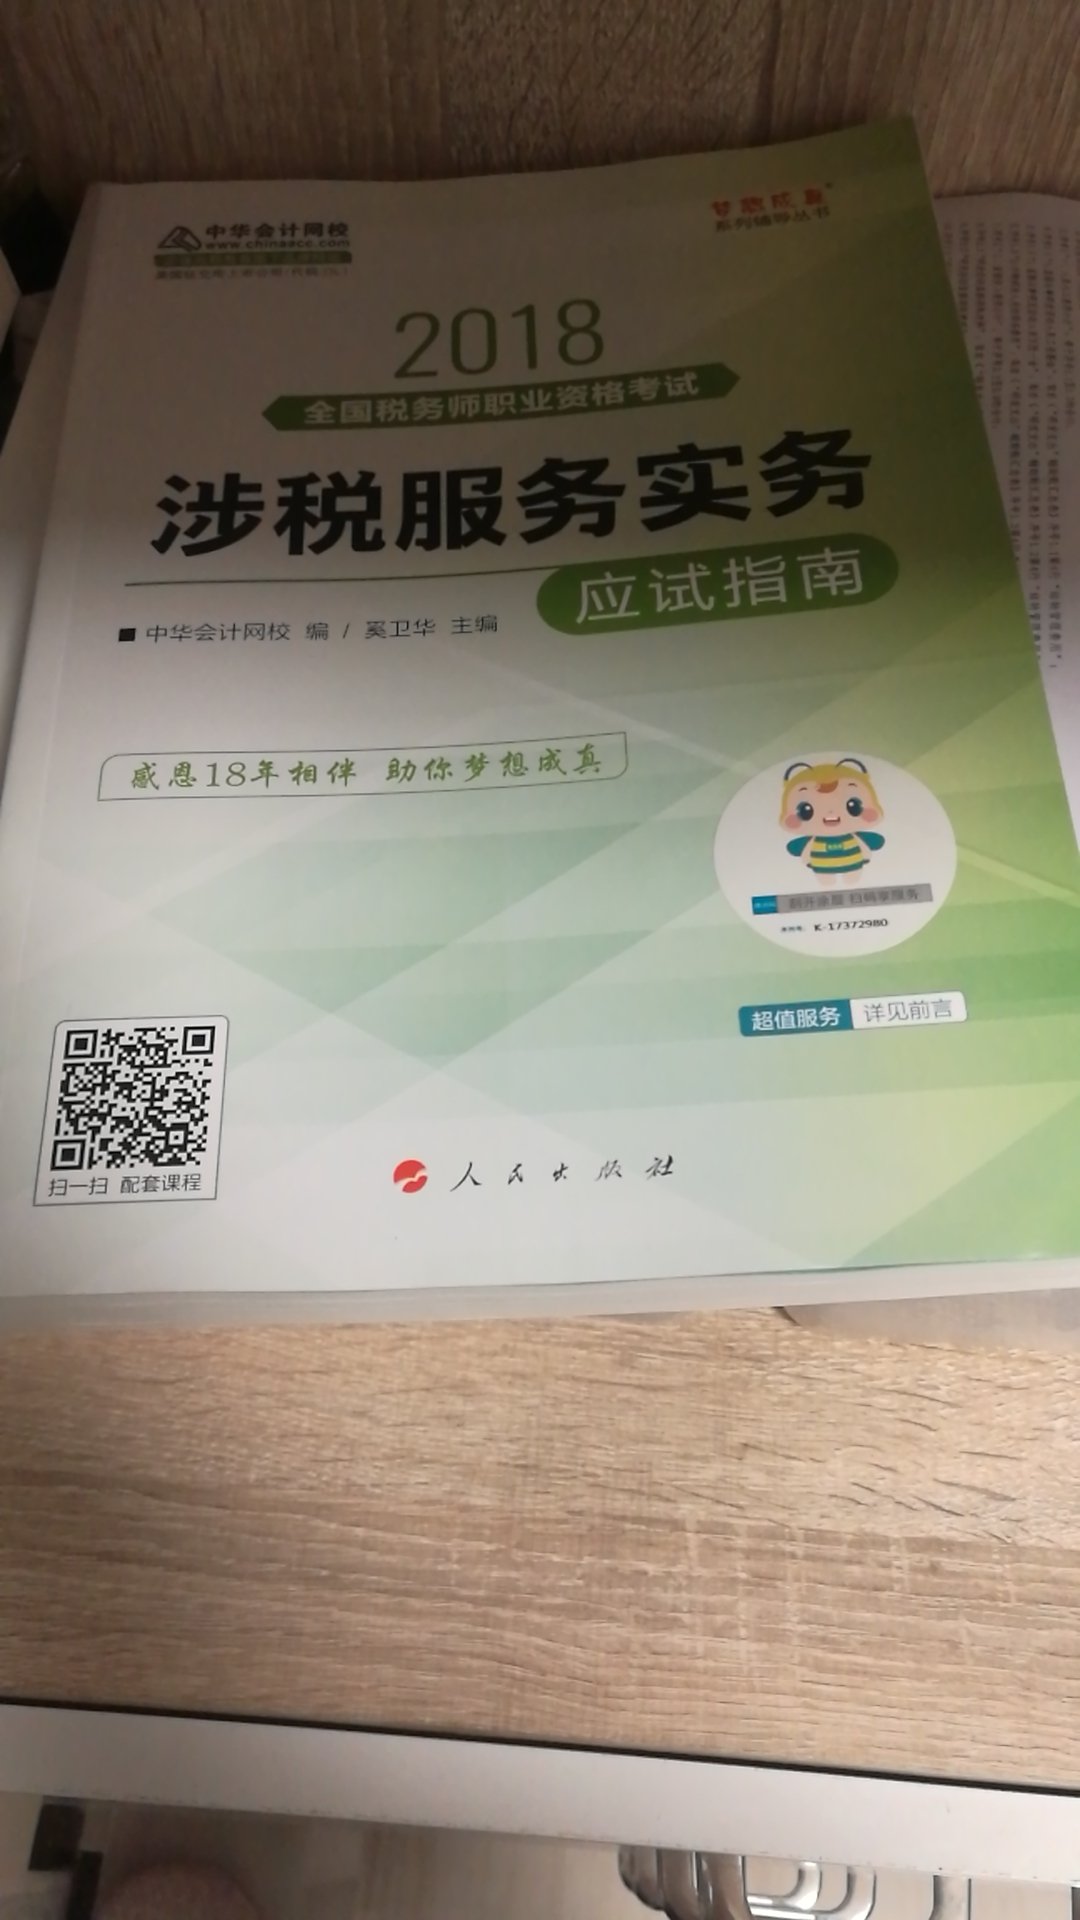 印刷很好，中华的老师也很用心，感觉买完必过